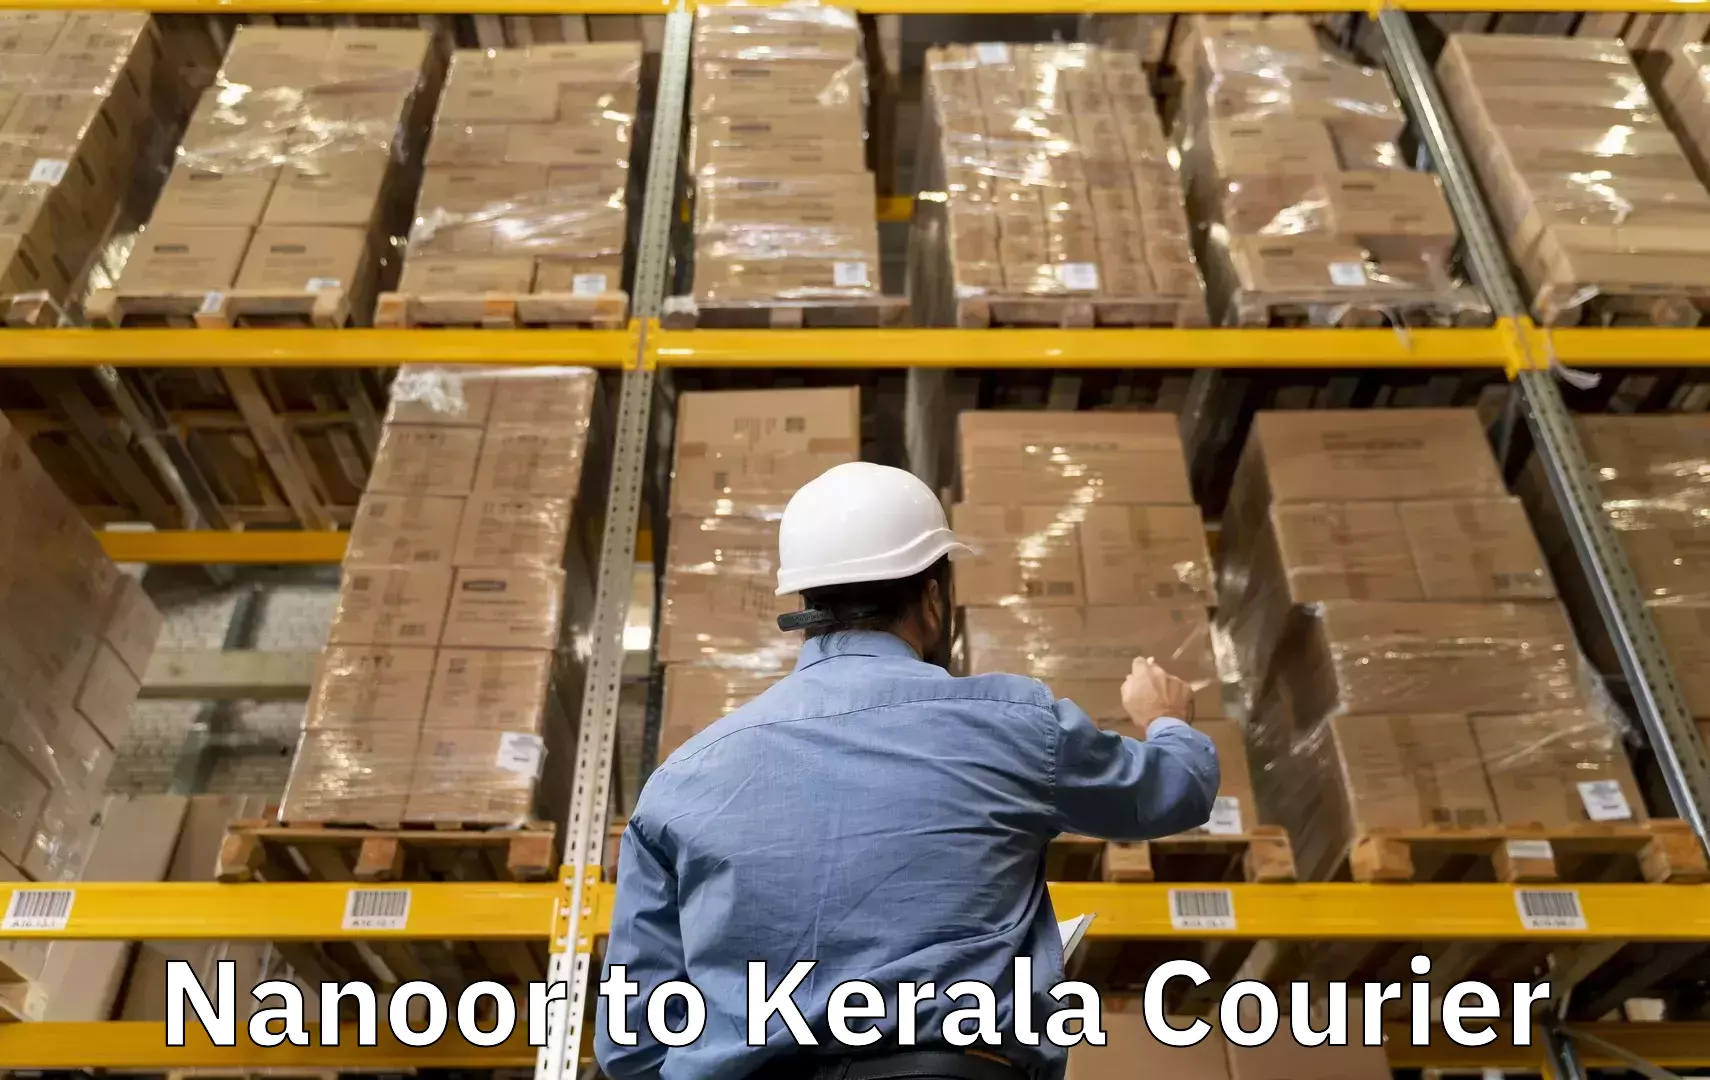 Doorstep luggage pickup Nanoor to Kerala